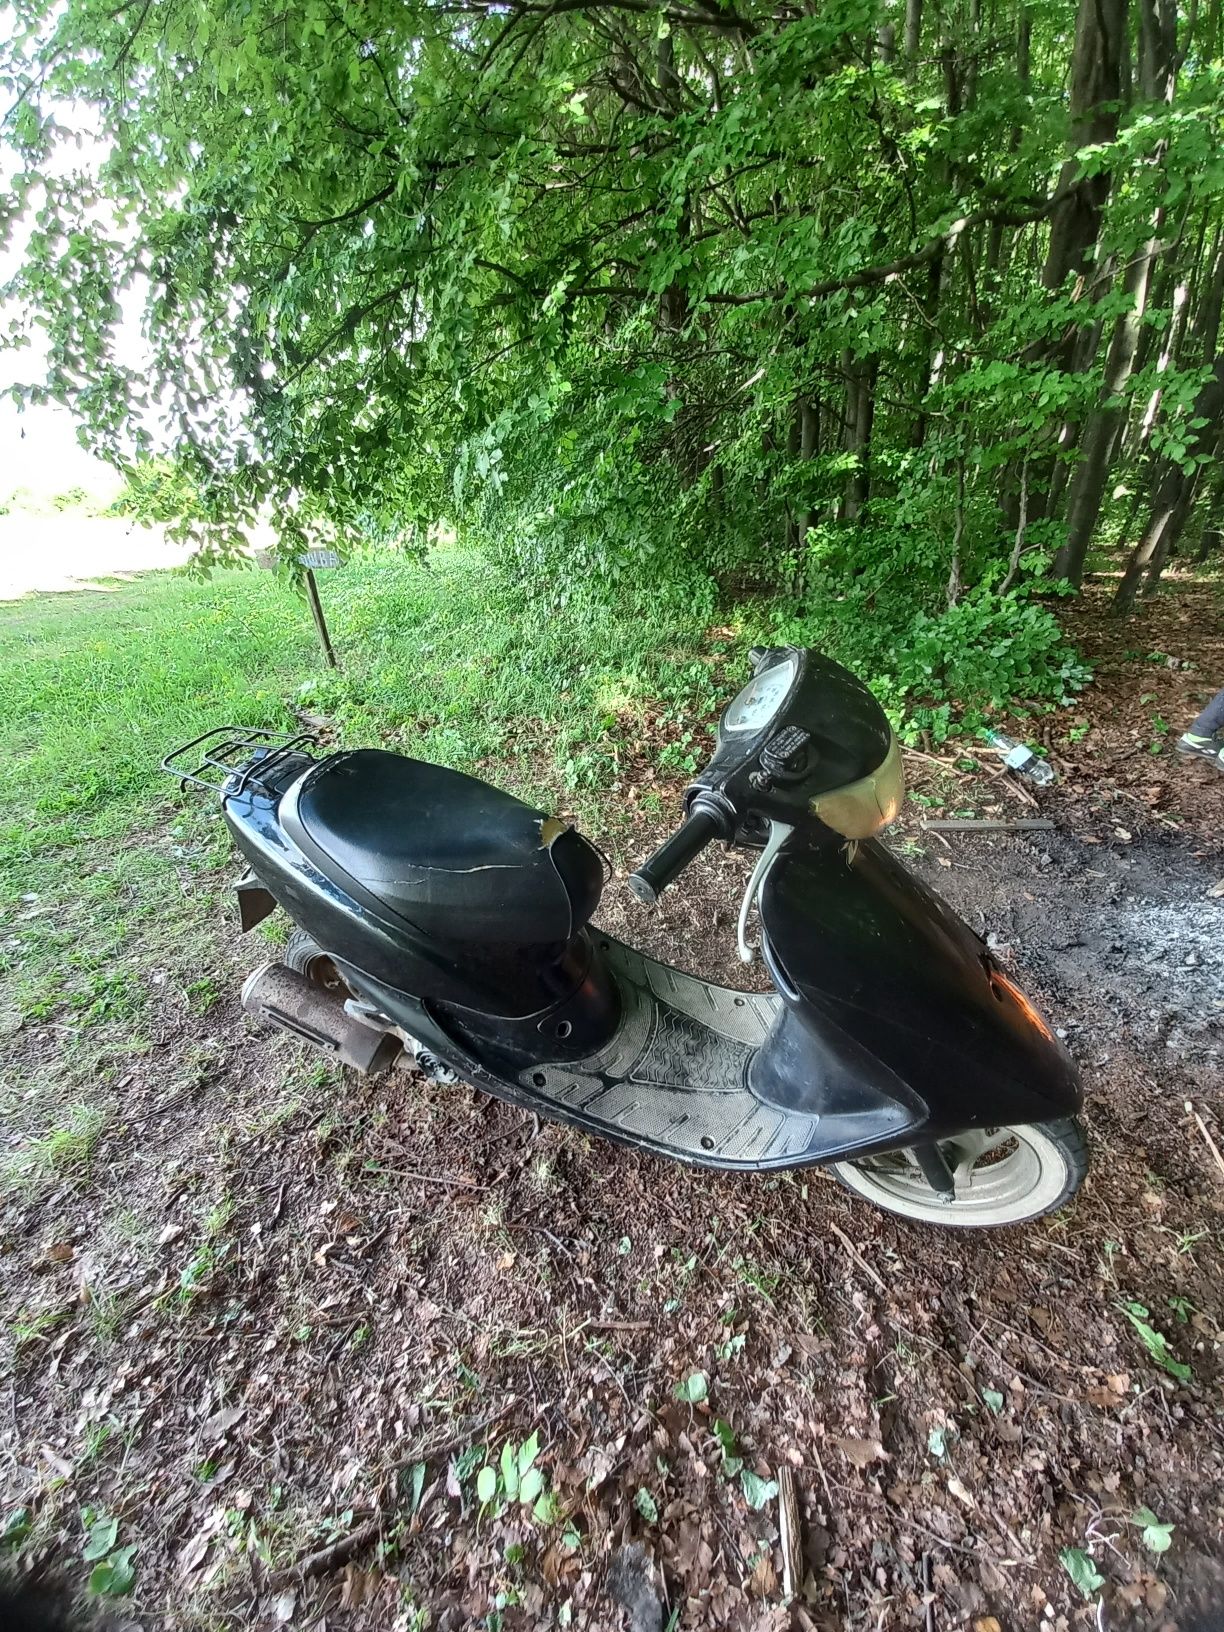 Honda Dio 27 scooter